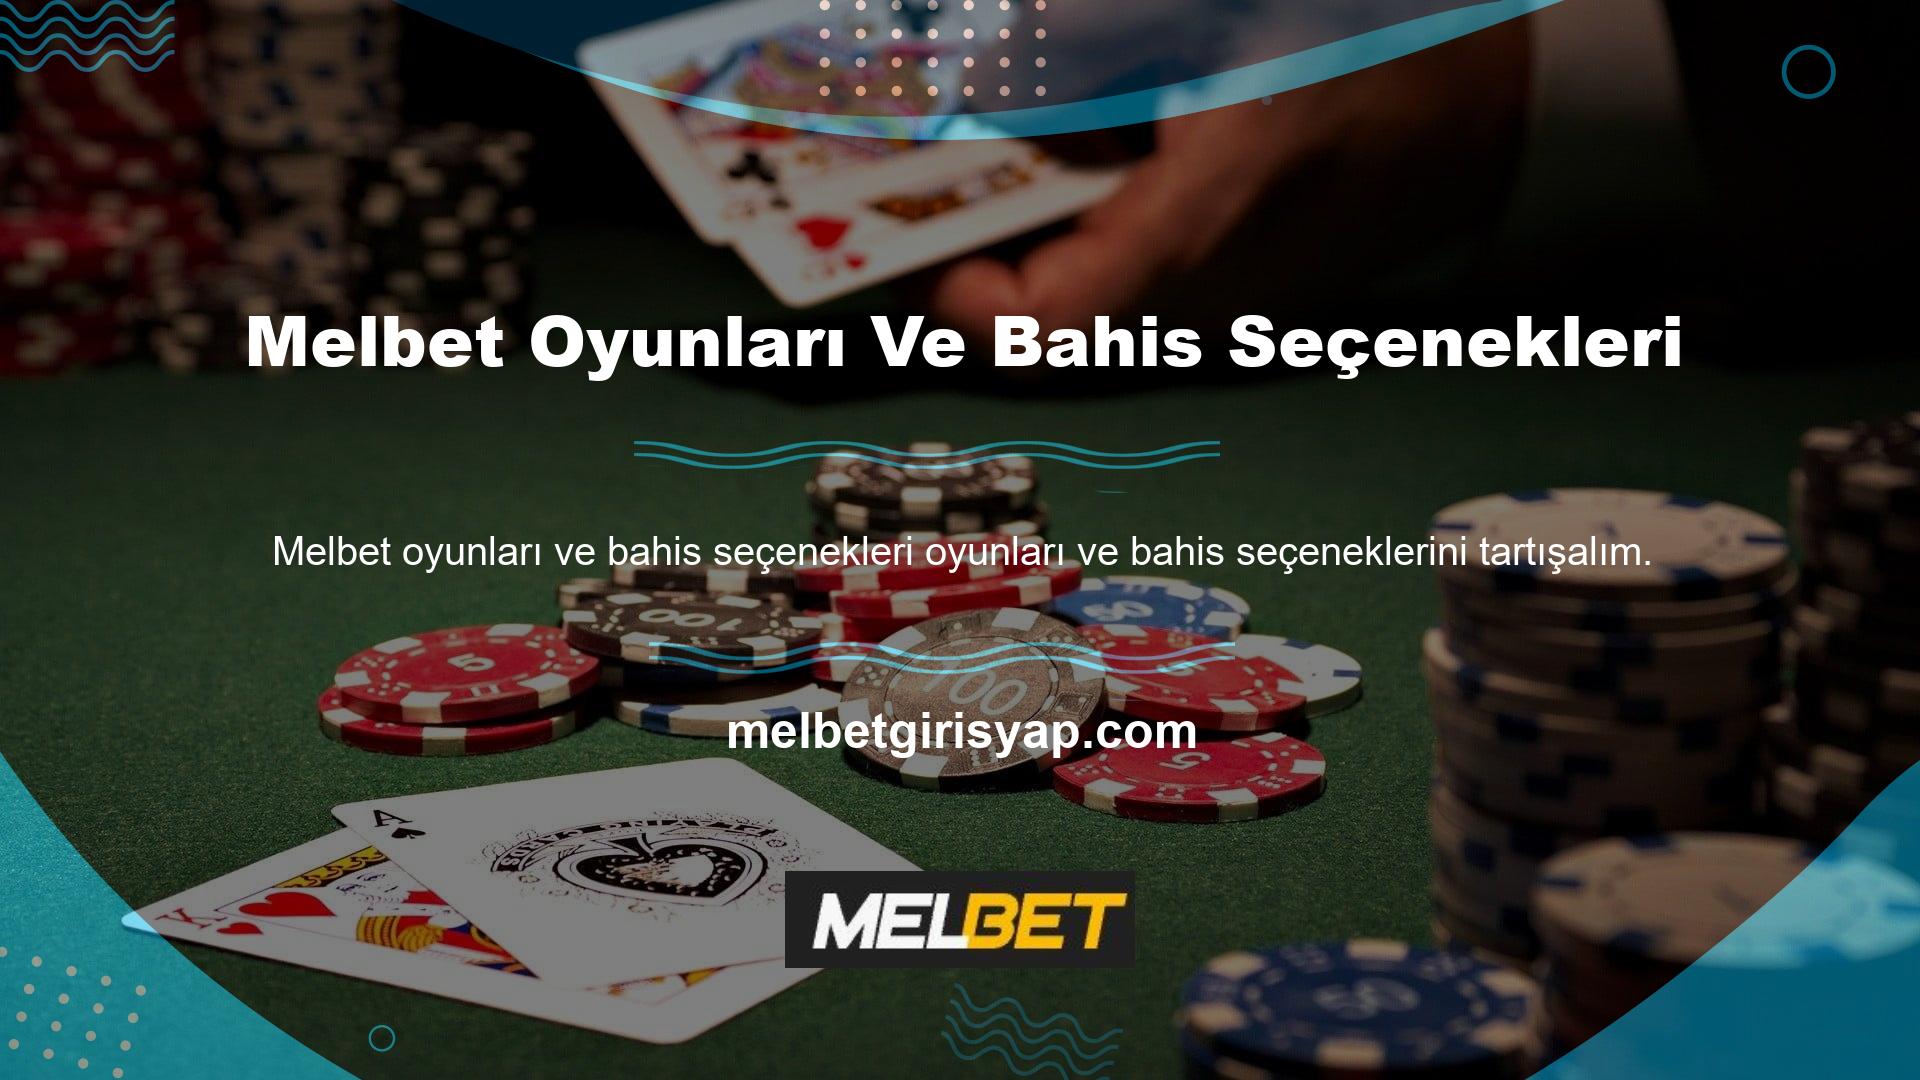 Araştırmamız gösteriyor ki Melbet, bir Yabancı bahis şirketi, diğer birçok siteye göre daha az sayıda Türkçe casino oyununa sahiptir